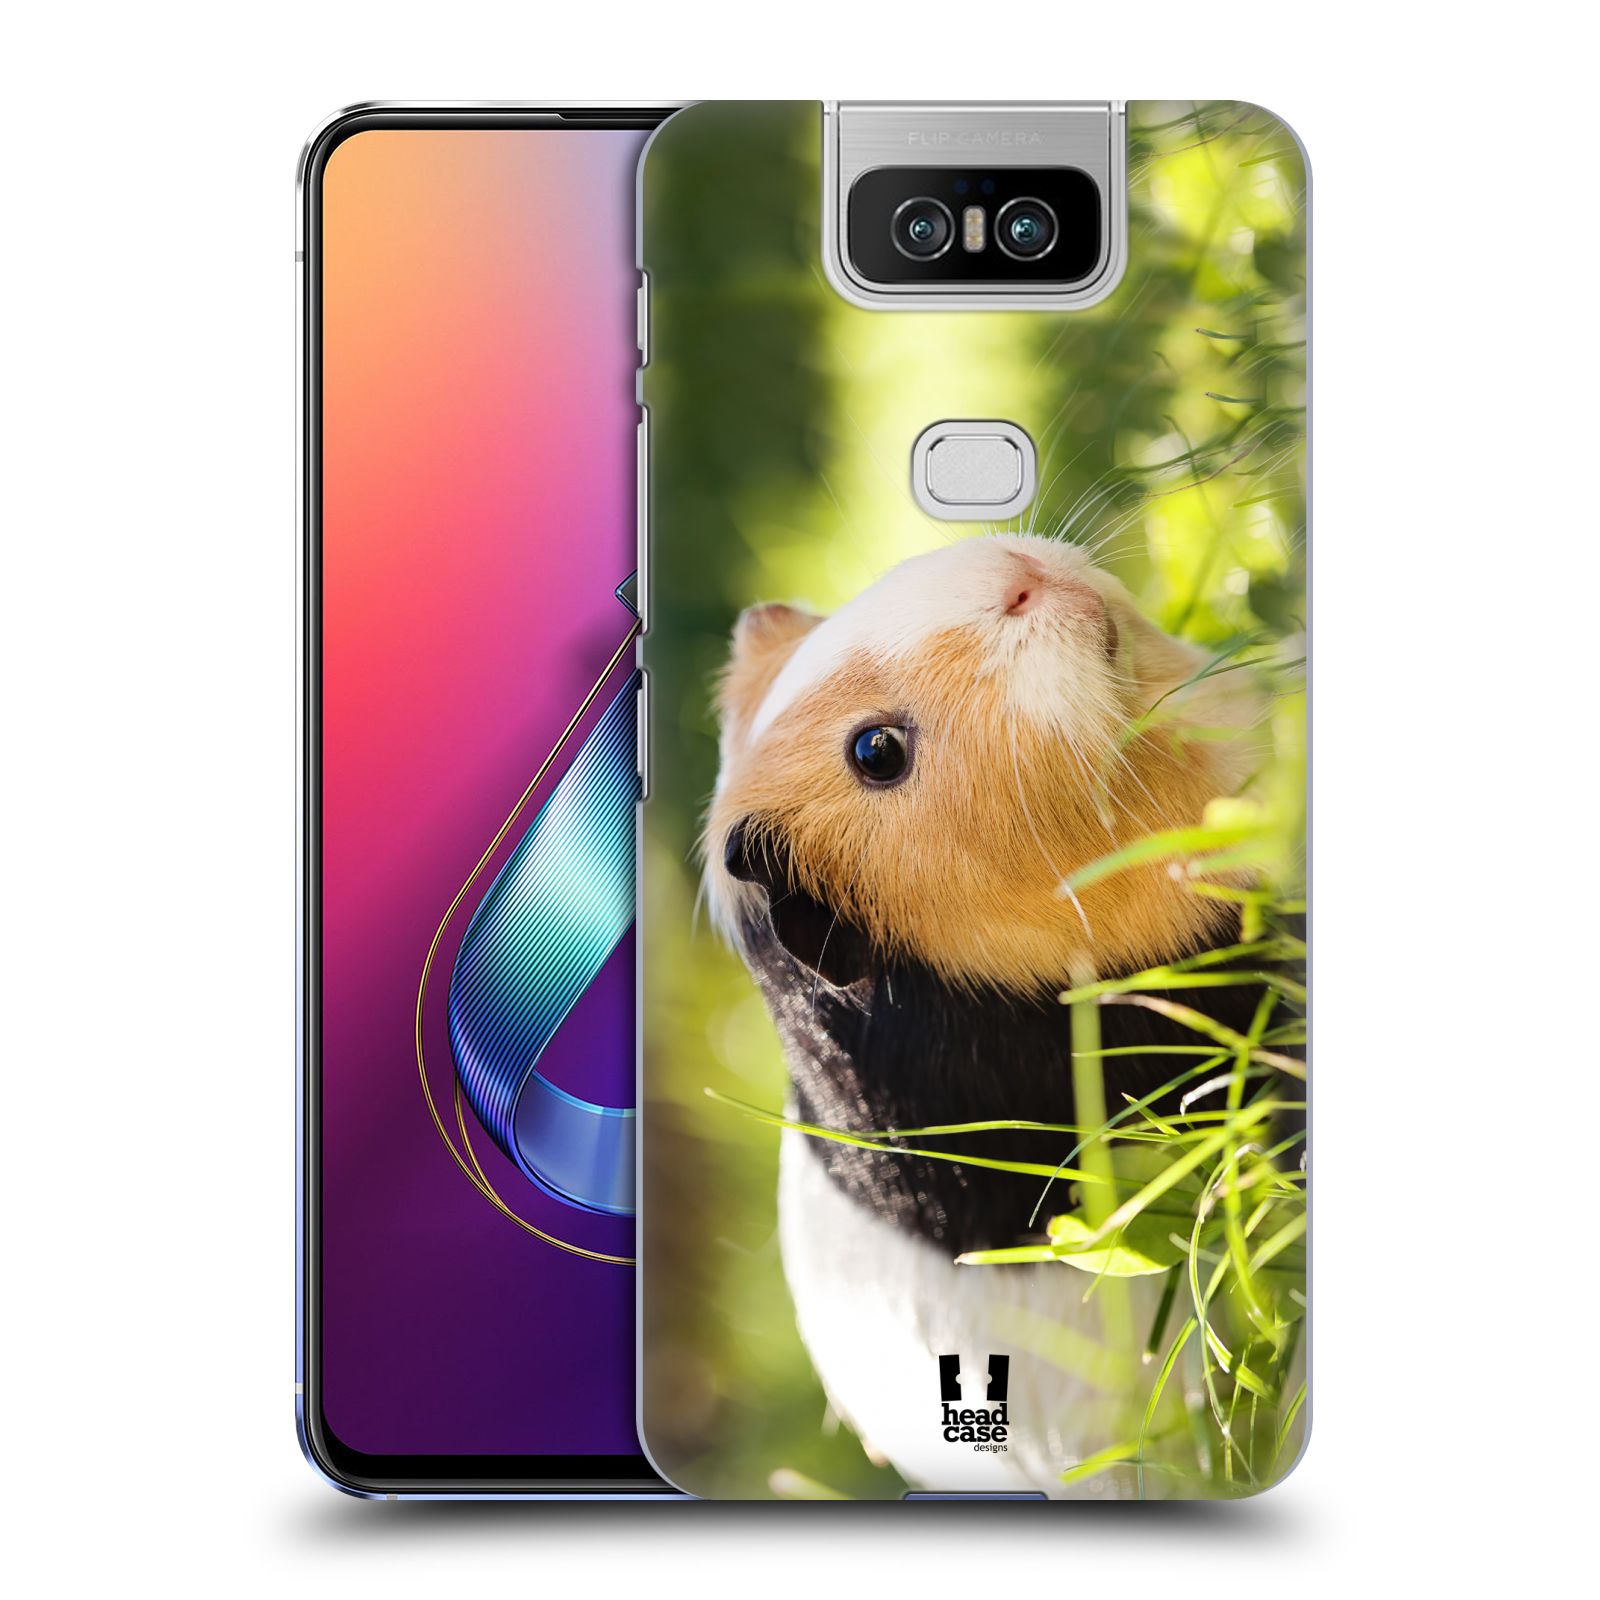 Pouzdro na mobil Asus Zenfone 6 ZS630KL - HEAD CASE - vzor slavná zvířata foto morče